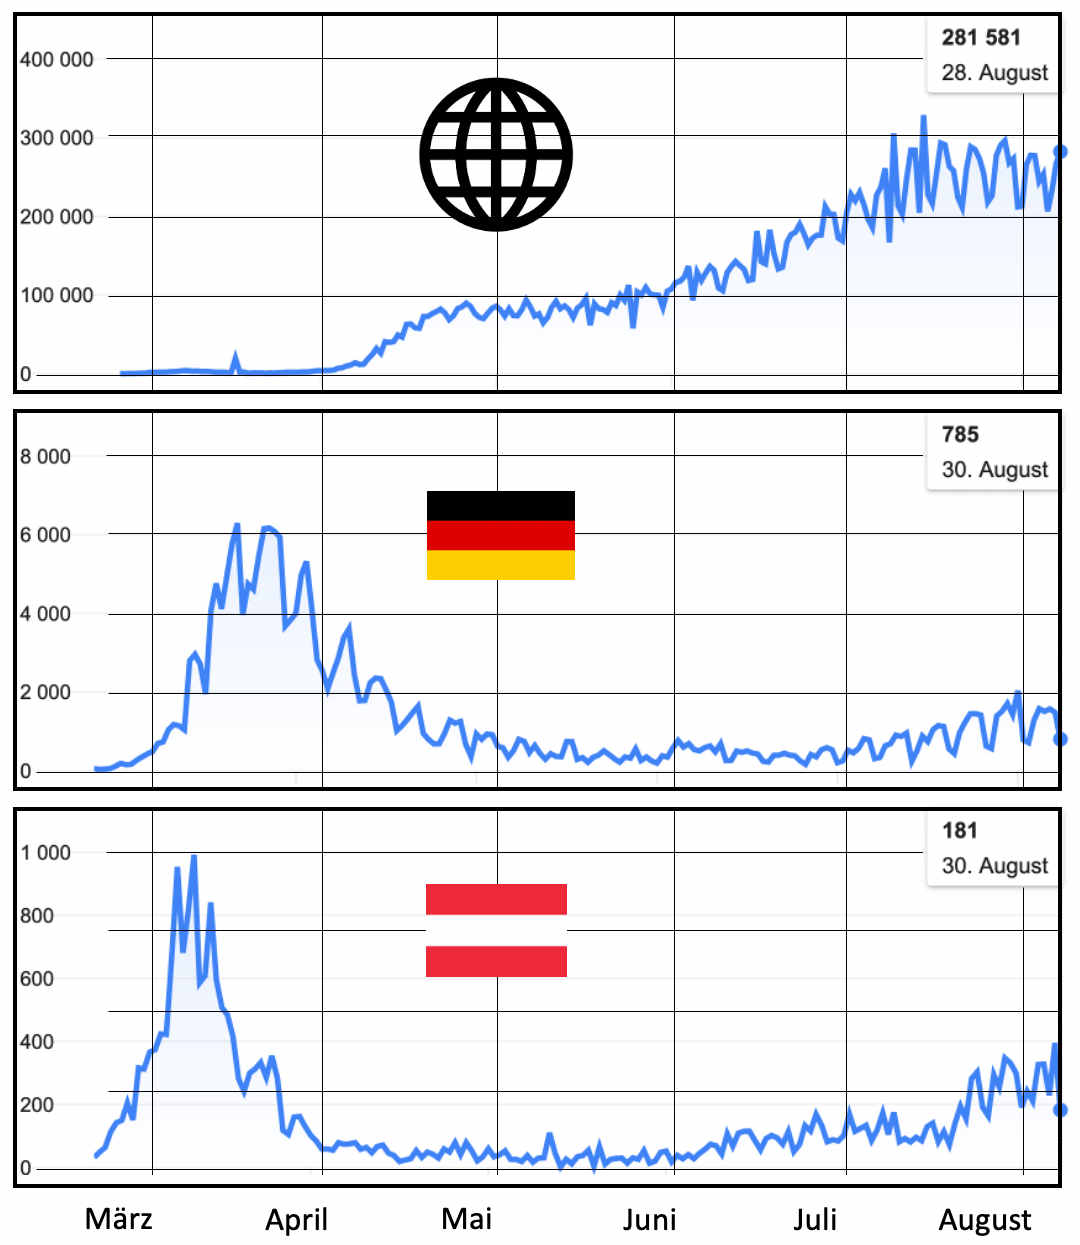 Taegliche Neuinfektionen: Der Welt, Deutschlands, Oesterreichs